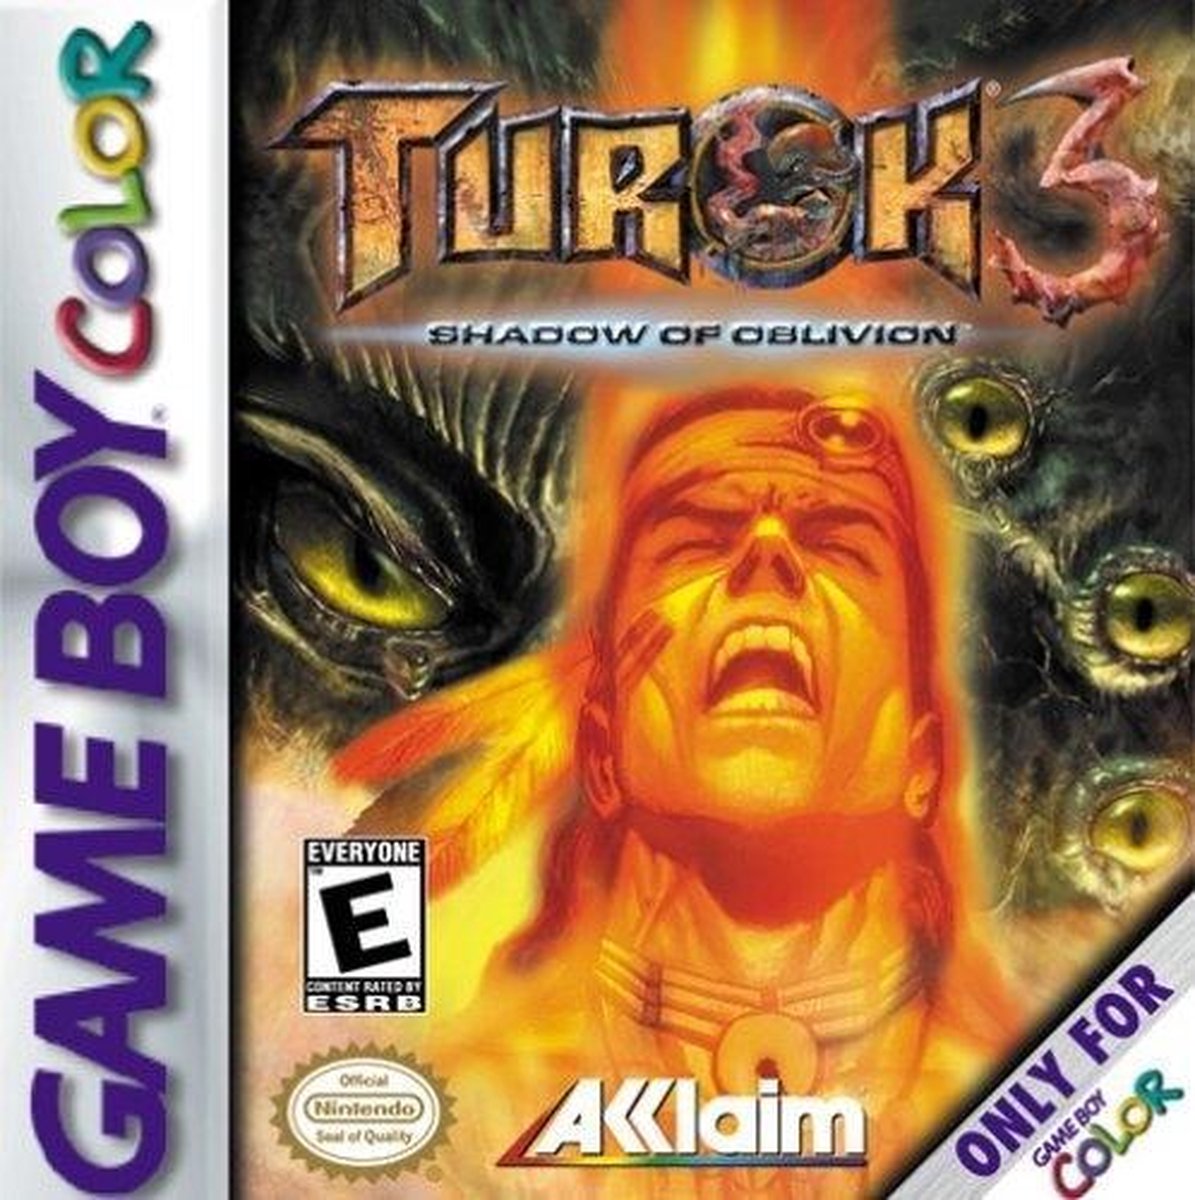 Turok 3 - Nintendo